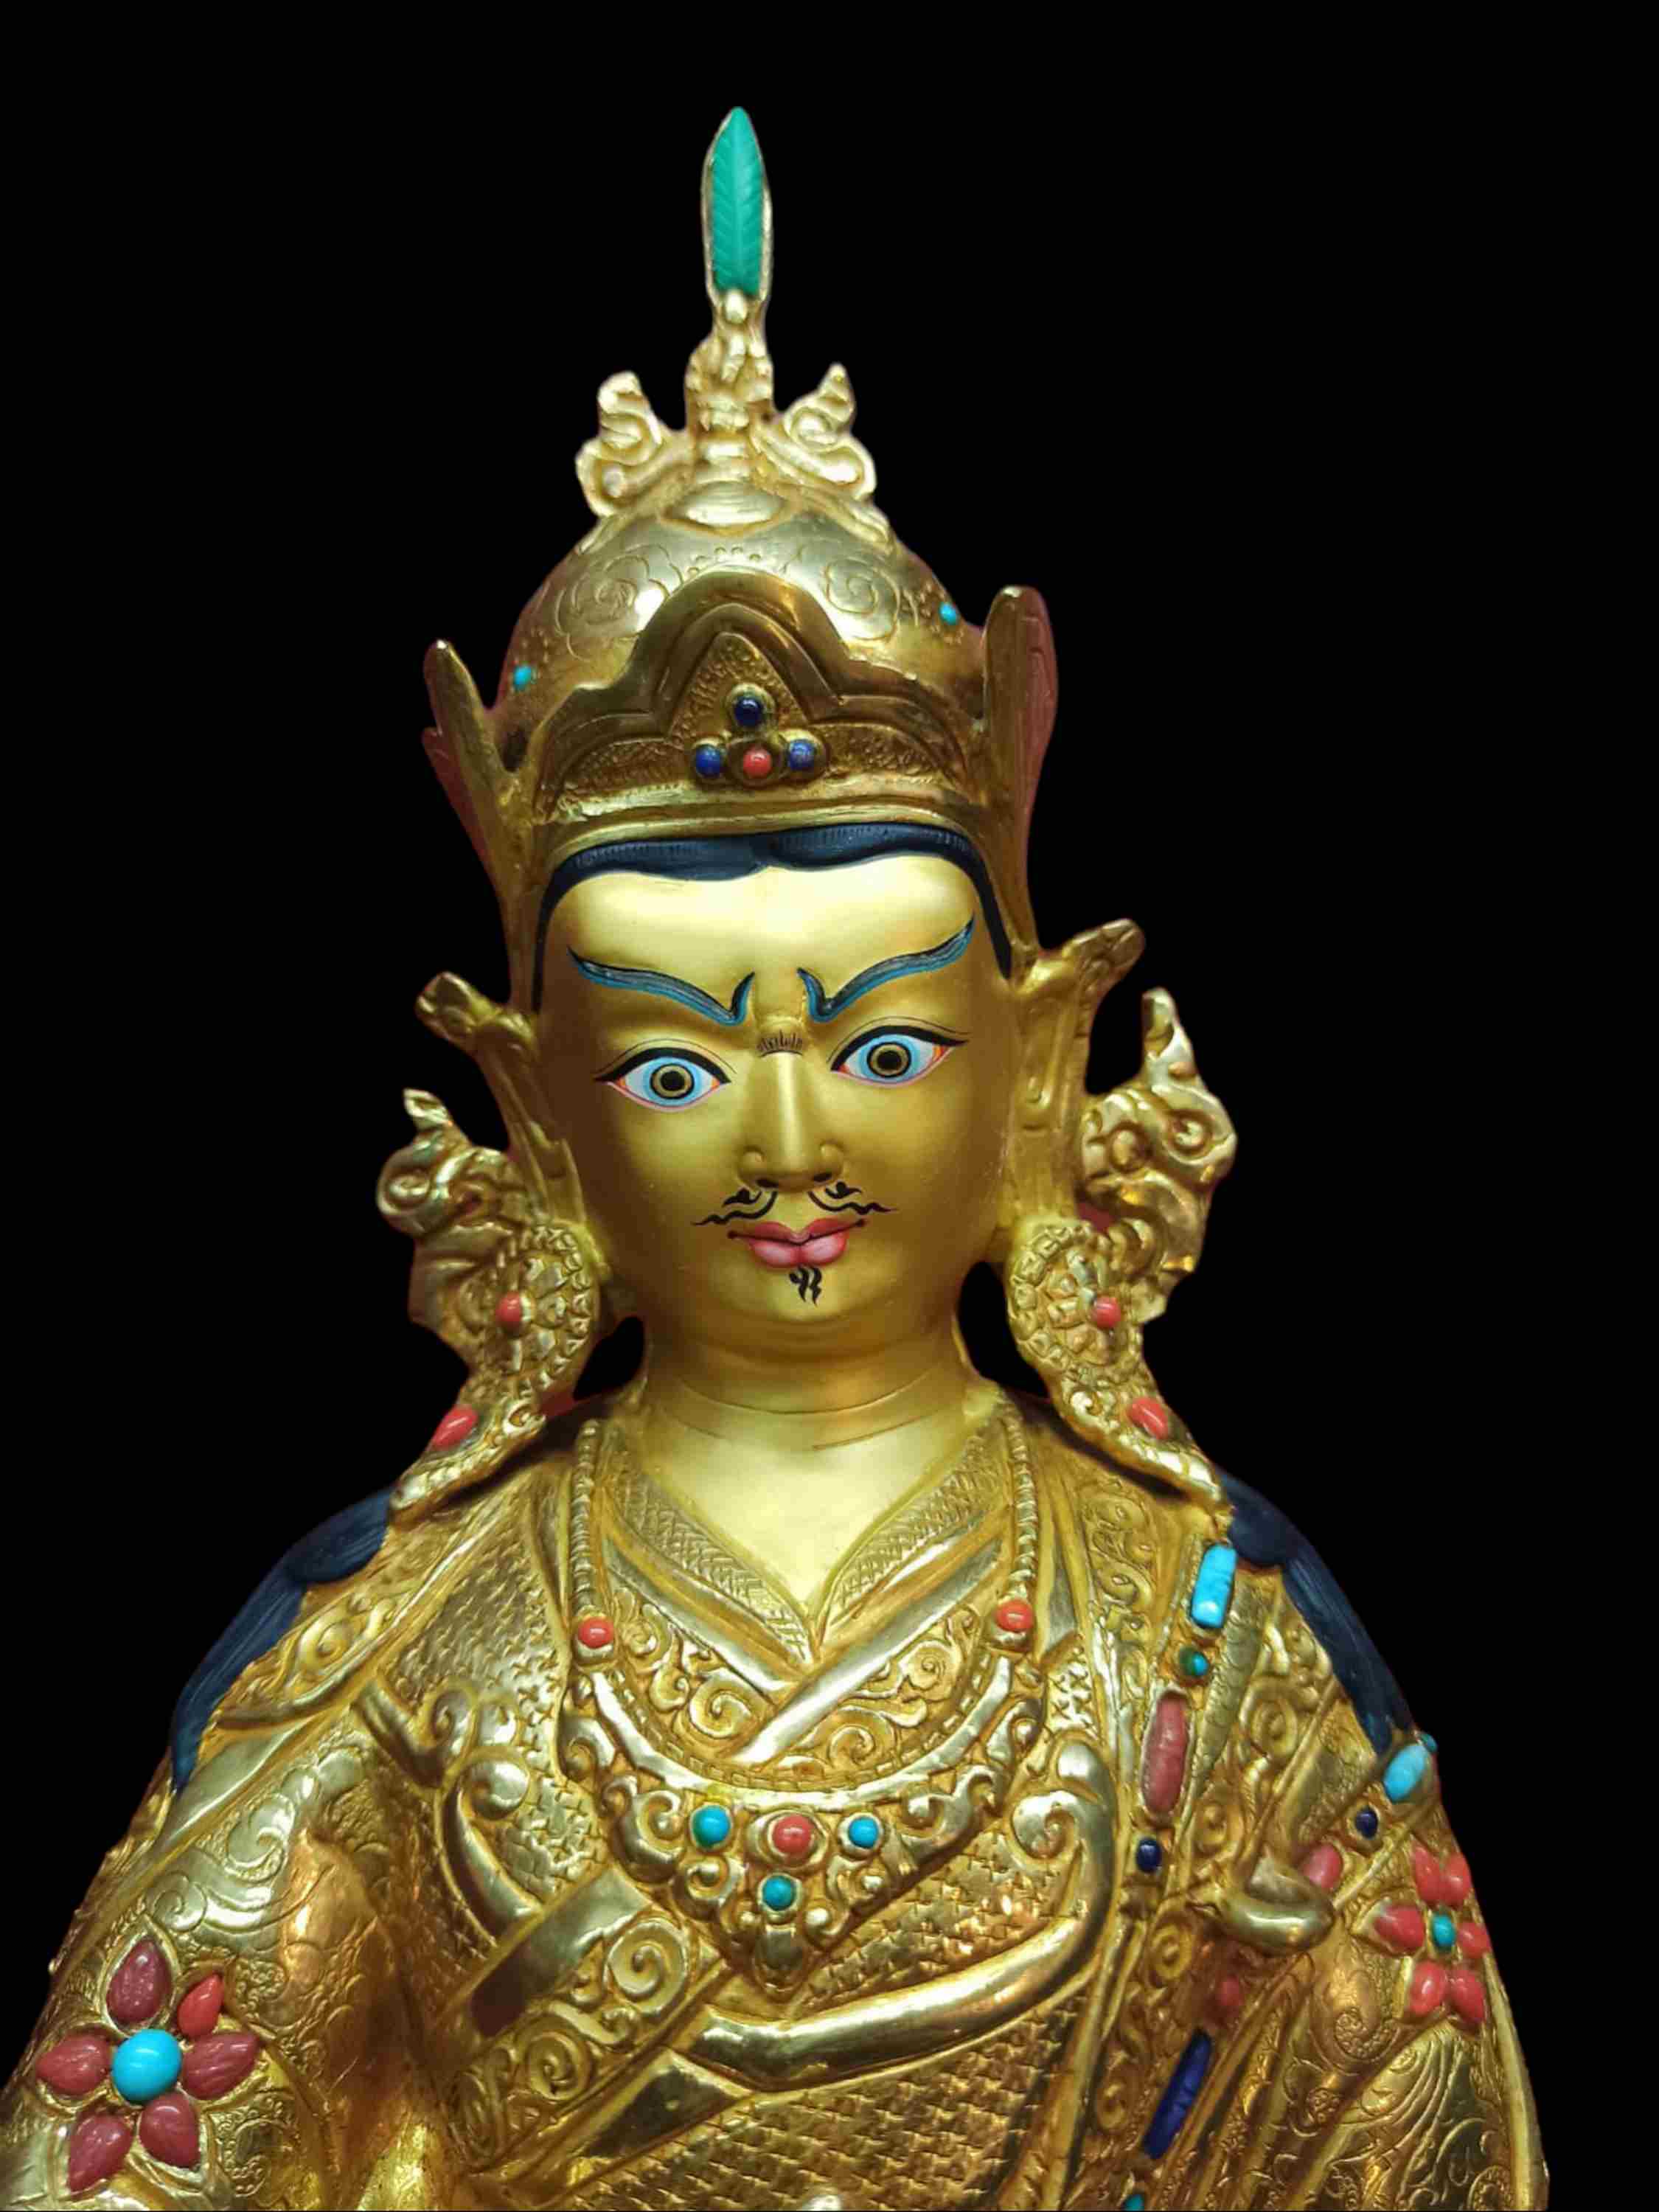 Buddhist Handmade Statue Of Padmasambhava, Guru Rimpoche, full Gold Plated, Stone Setting, Face Painted